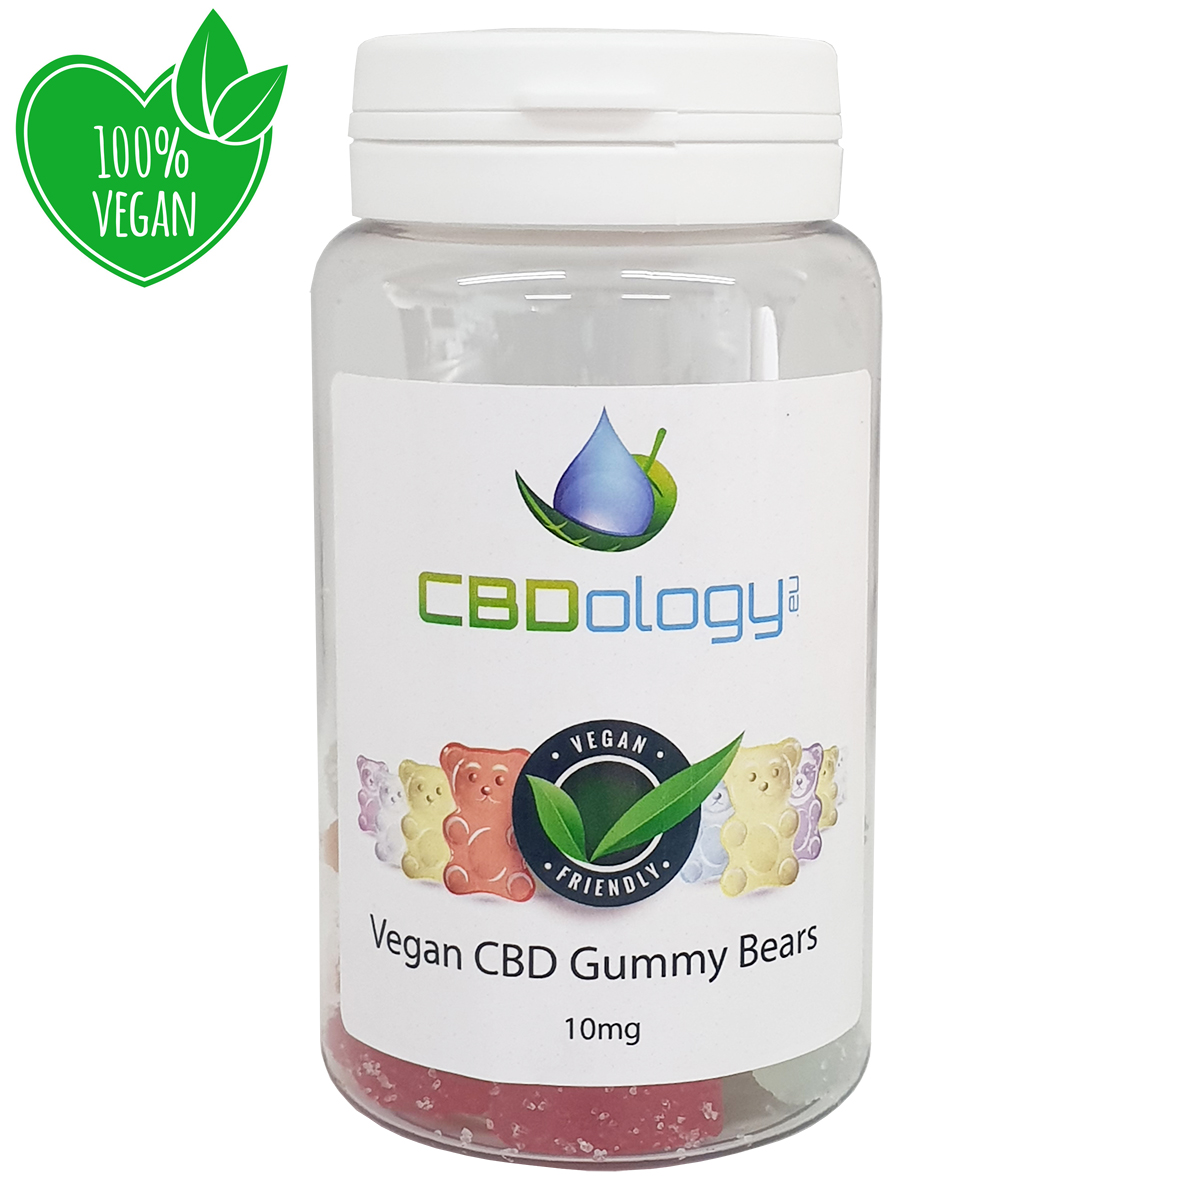 Vegan CBD Gummy Bears